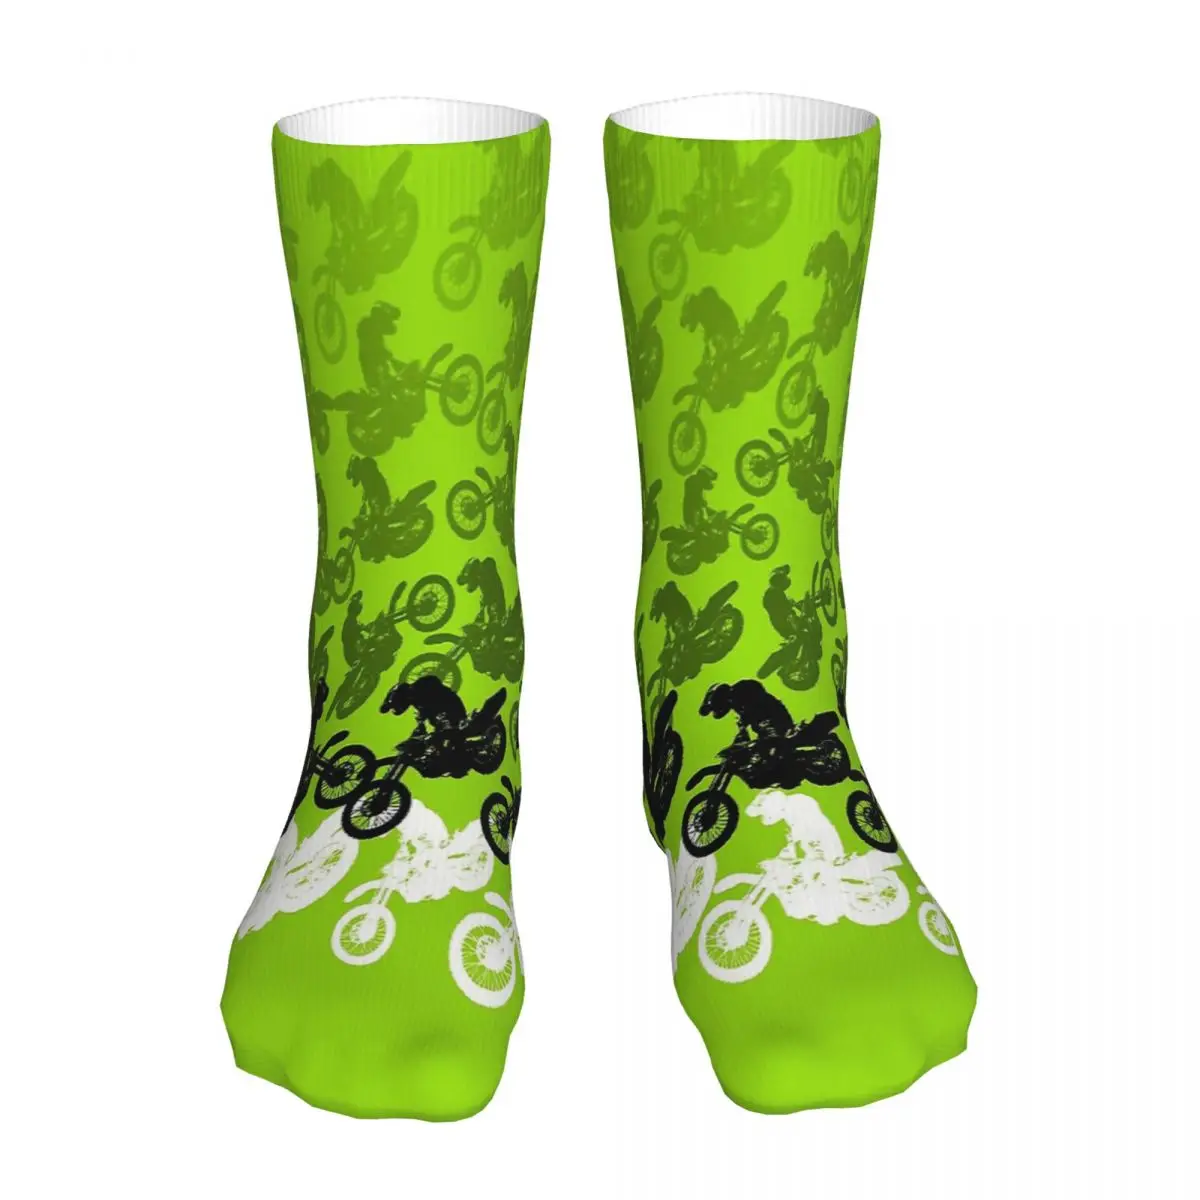 

Green Motocross Dirt Bike Racing Graphics Sock Socks Men Women Polyester Stockings Customizable Design